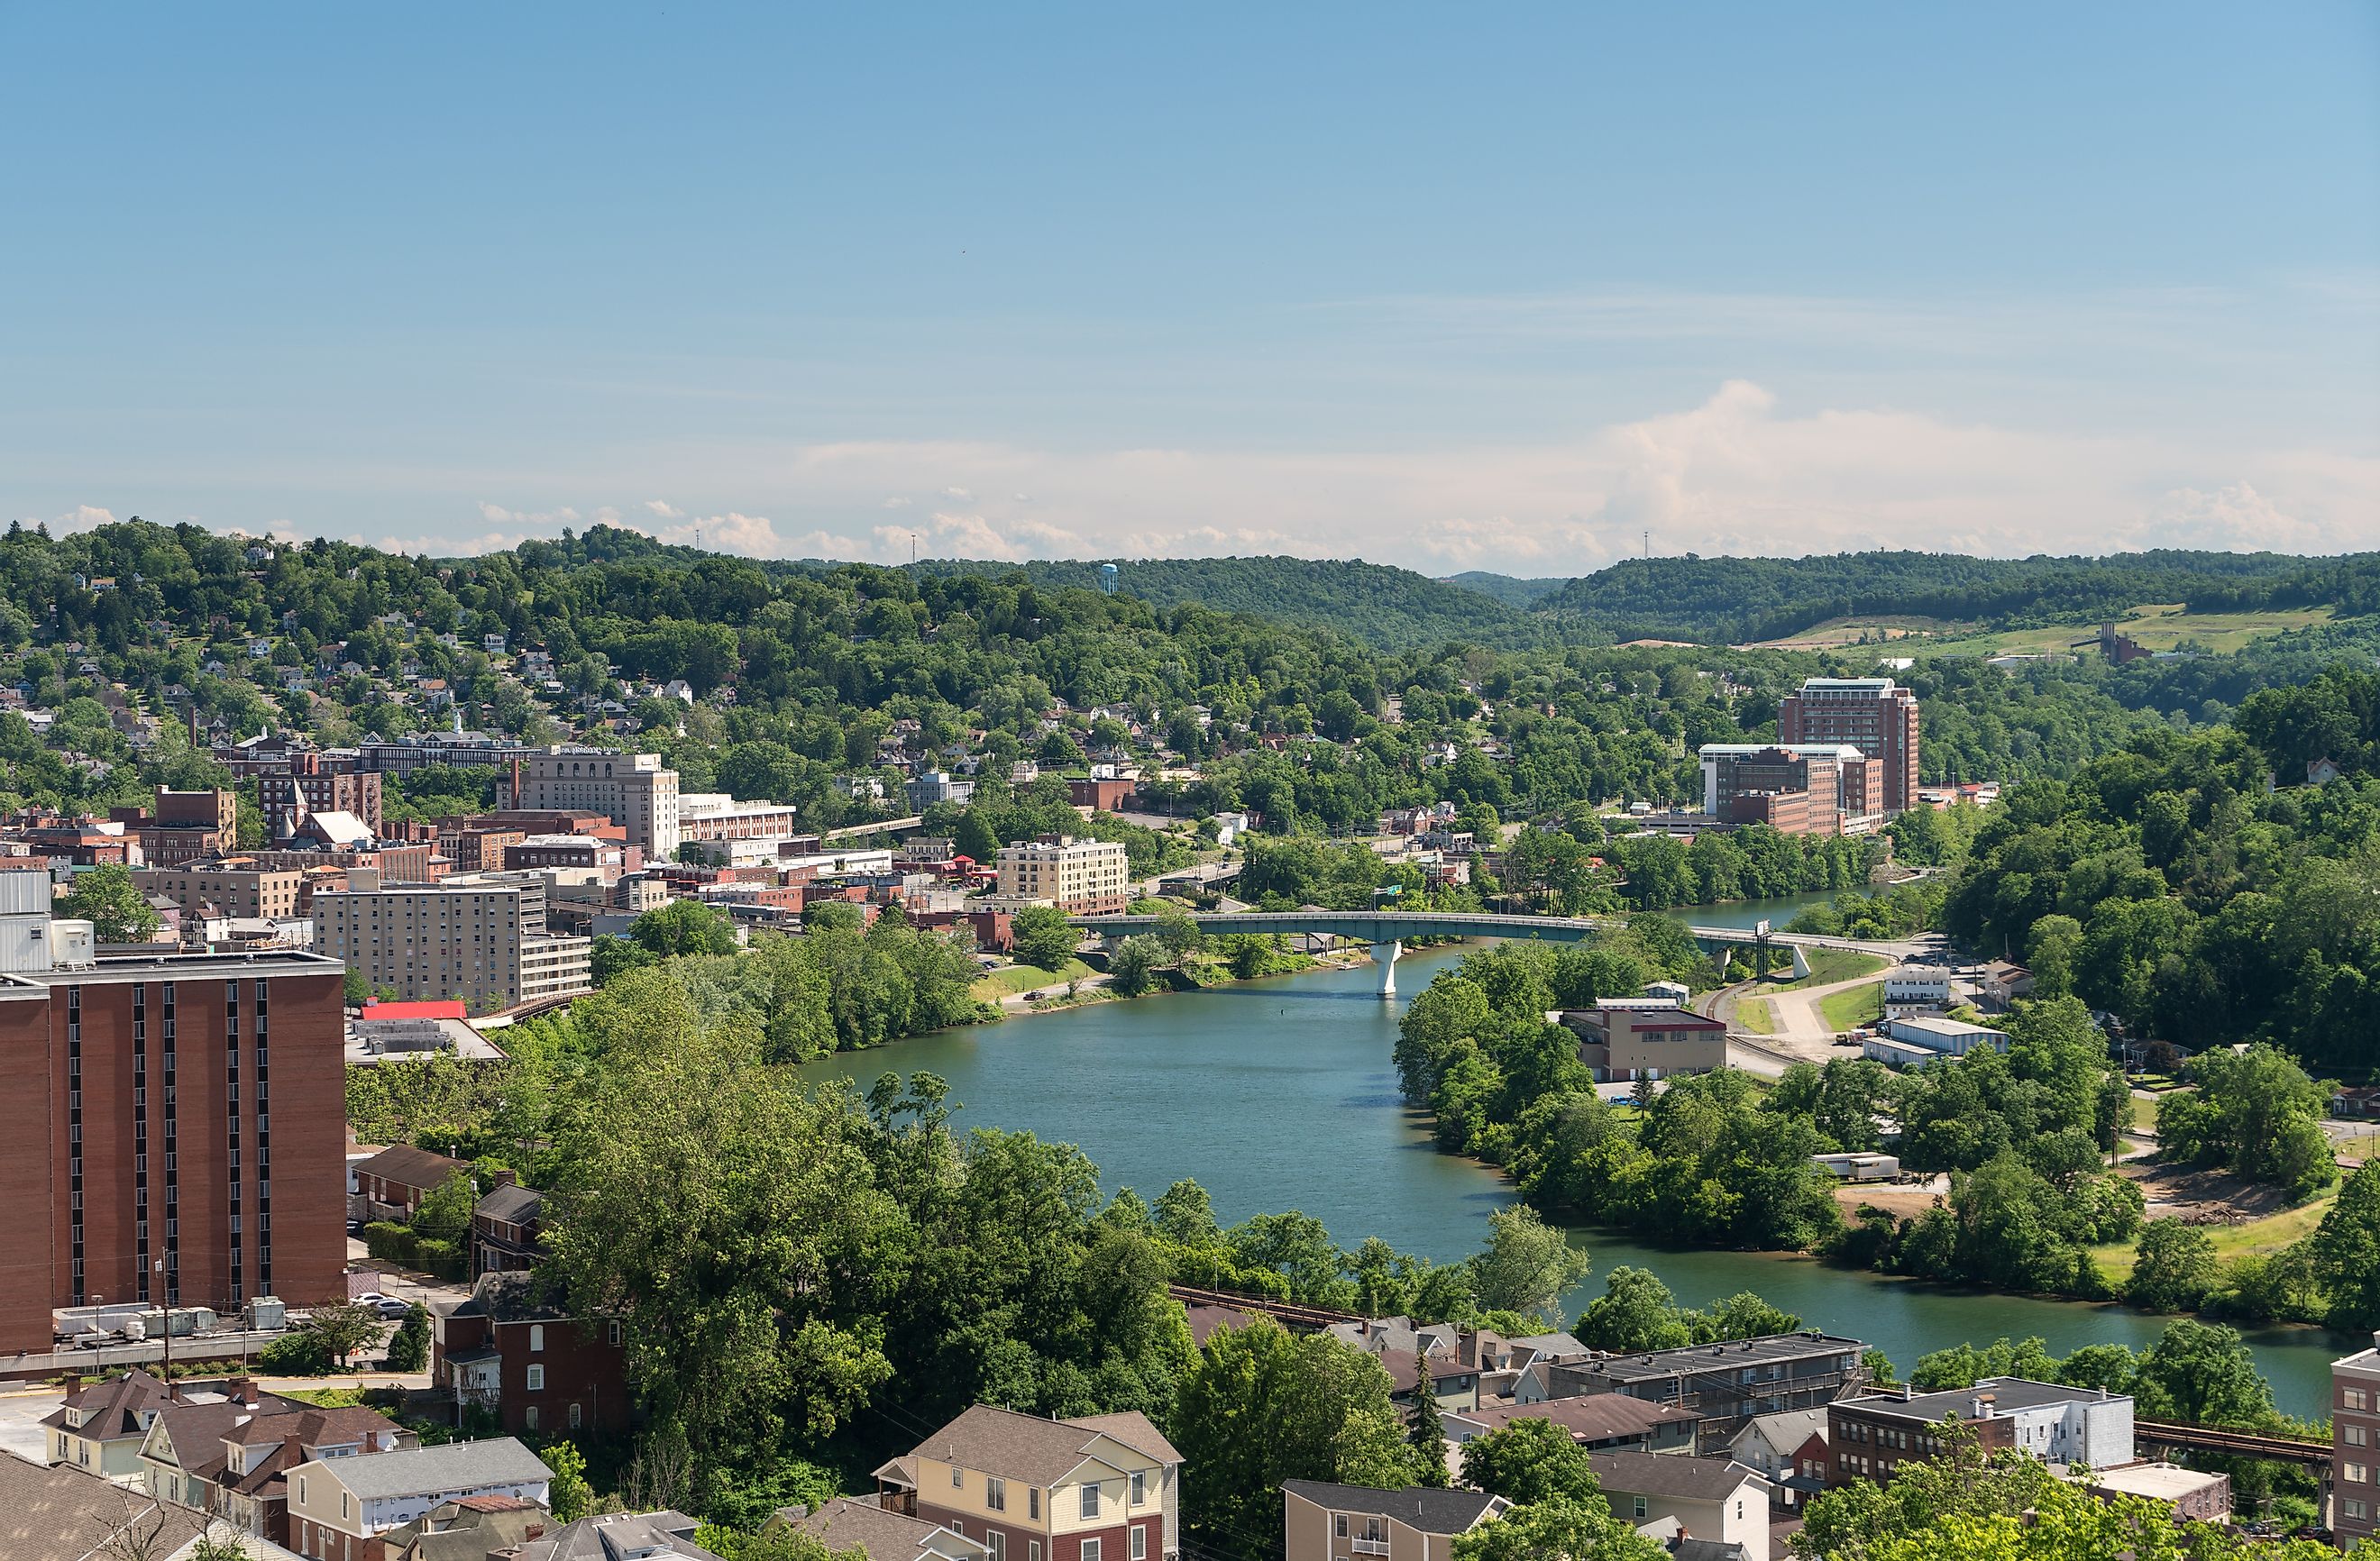 Aerial view of Morgantown, West Virginia.